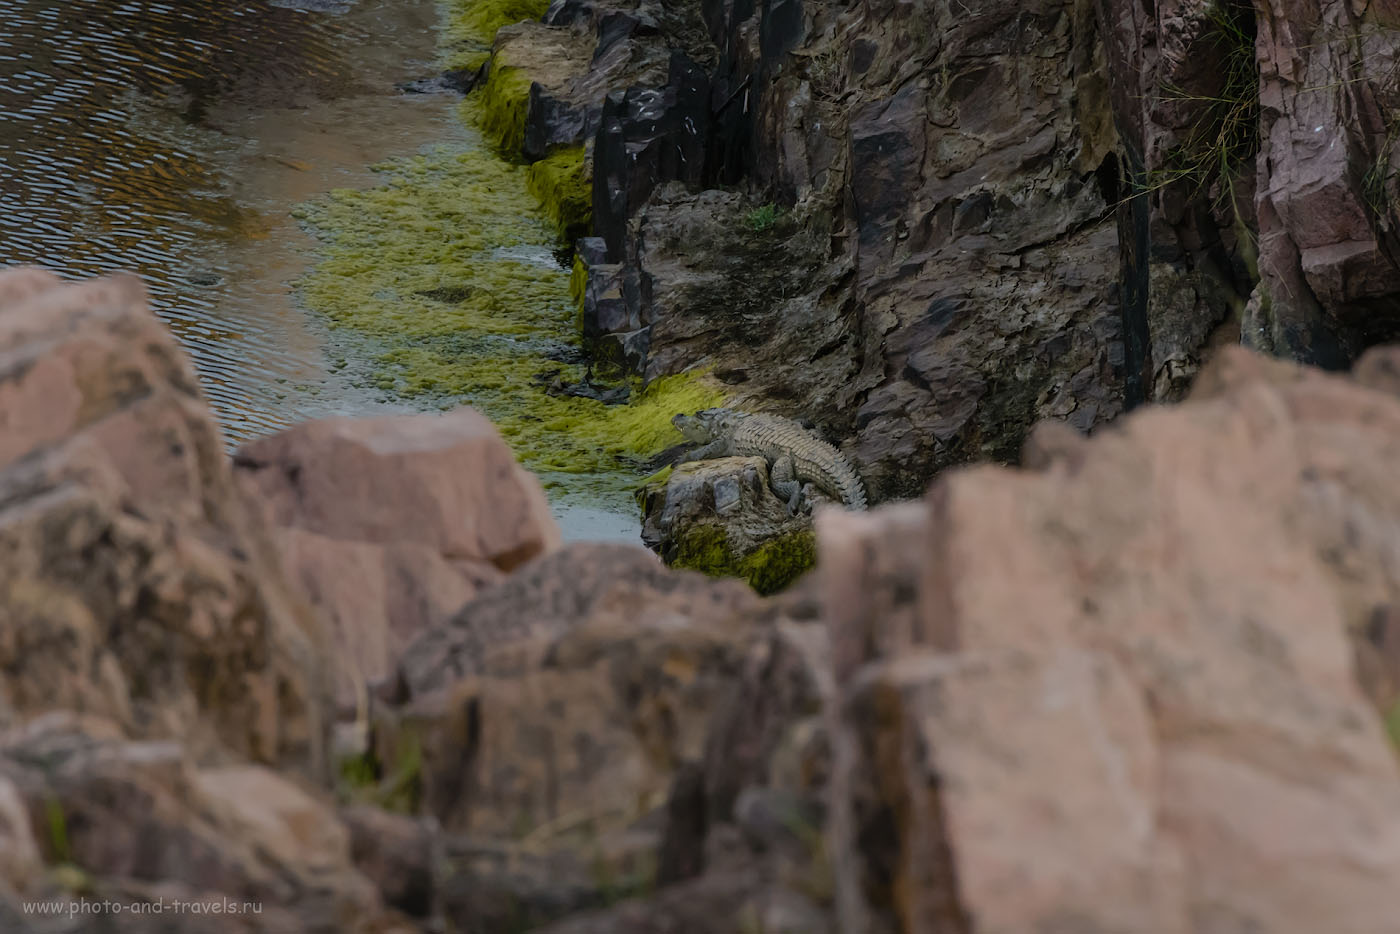 Фото 10. Фотоохота на крокодила в окрестностях водопадов Raneh Falls. Отчеты туристов об экскурсиях из Кхаджурахо. 1/500, -0.67, 14.0, 6400, 280.